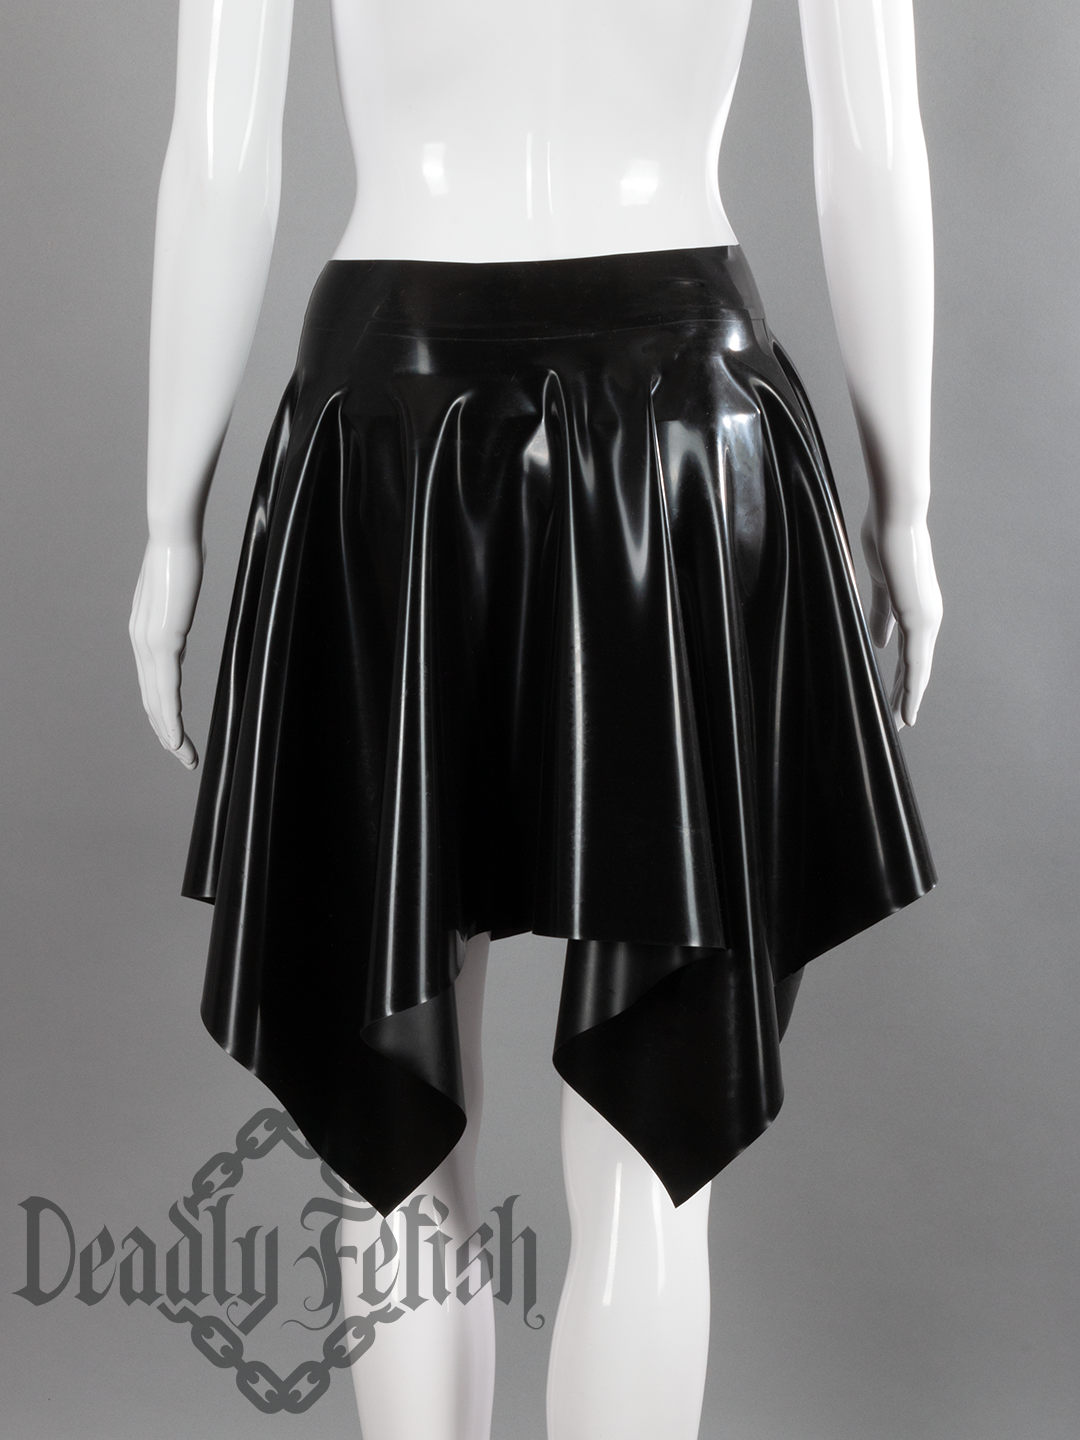 Deadly Fetish Latex: Skirt #09